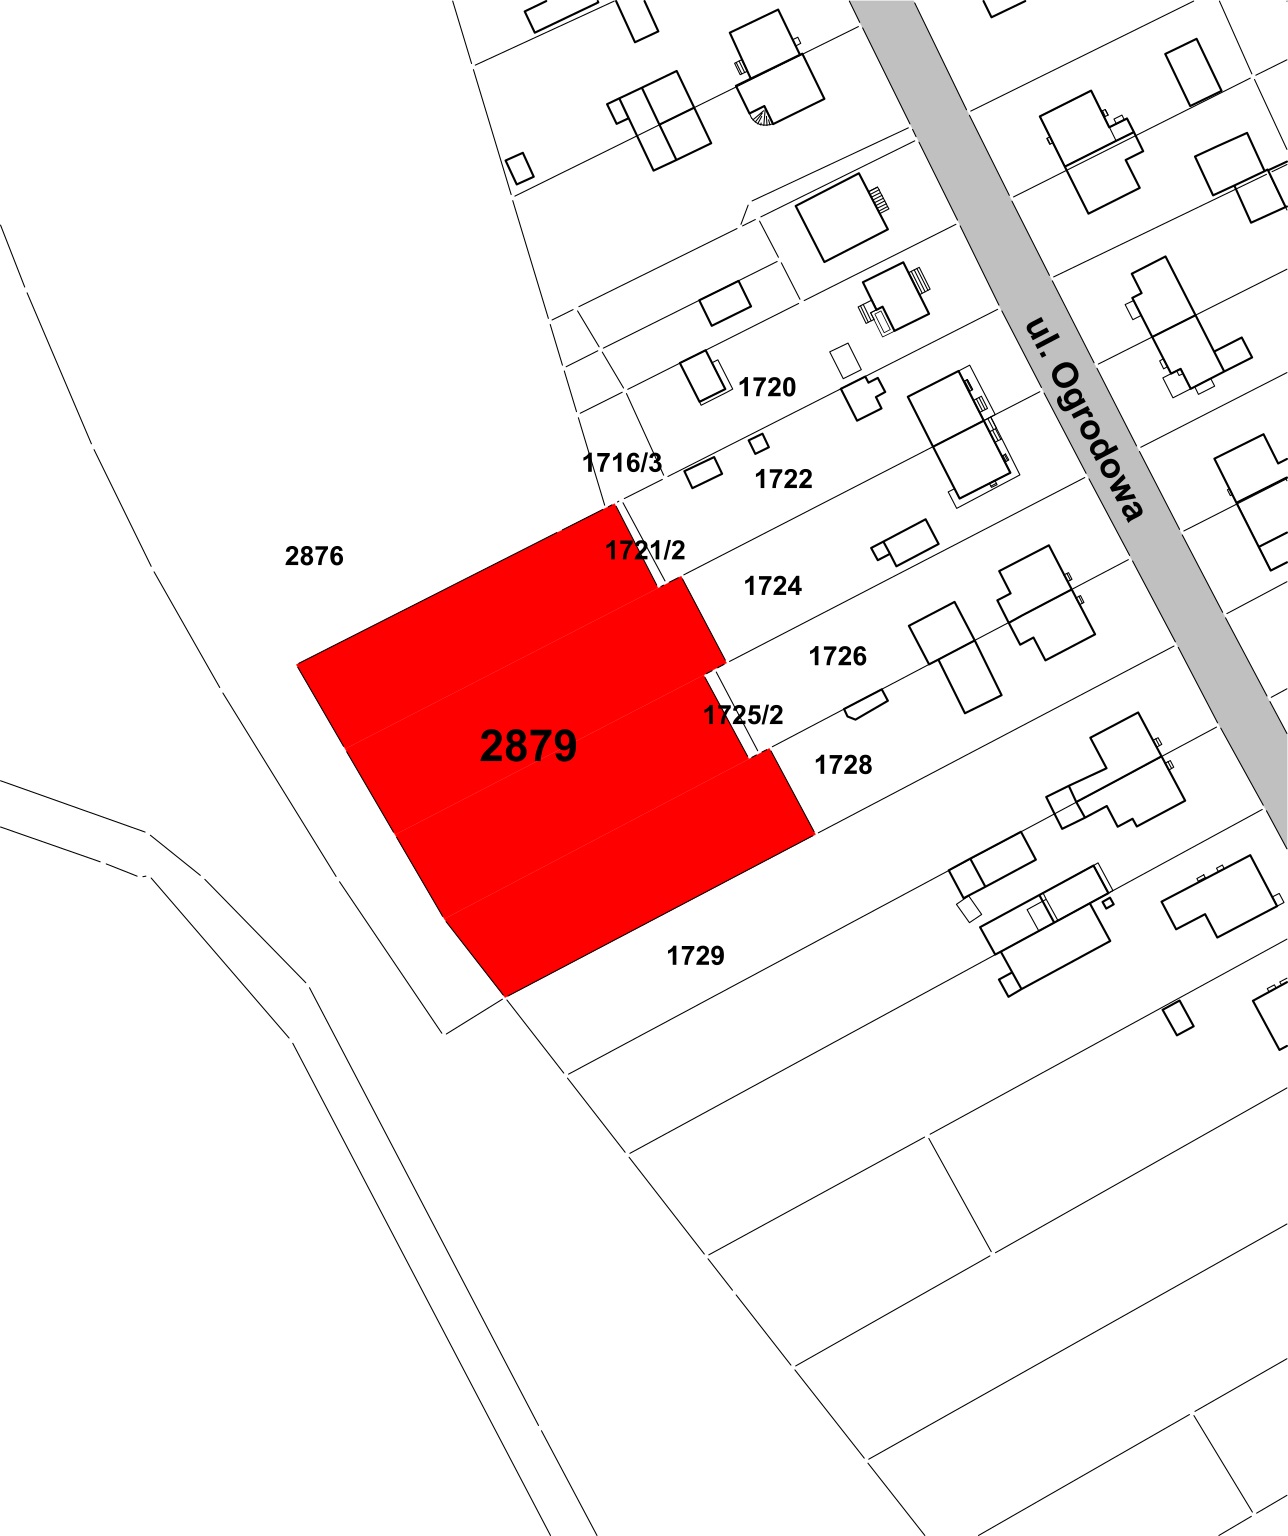 Уведомление о втором устном тендере, ограниченном продажей неосвоенных земель, расположенных в Элке в ул. 2879 га при площади 0,3528 га.